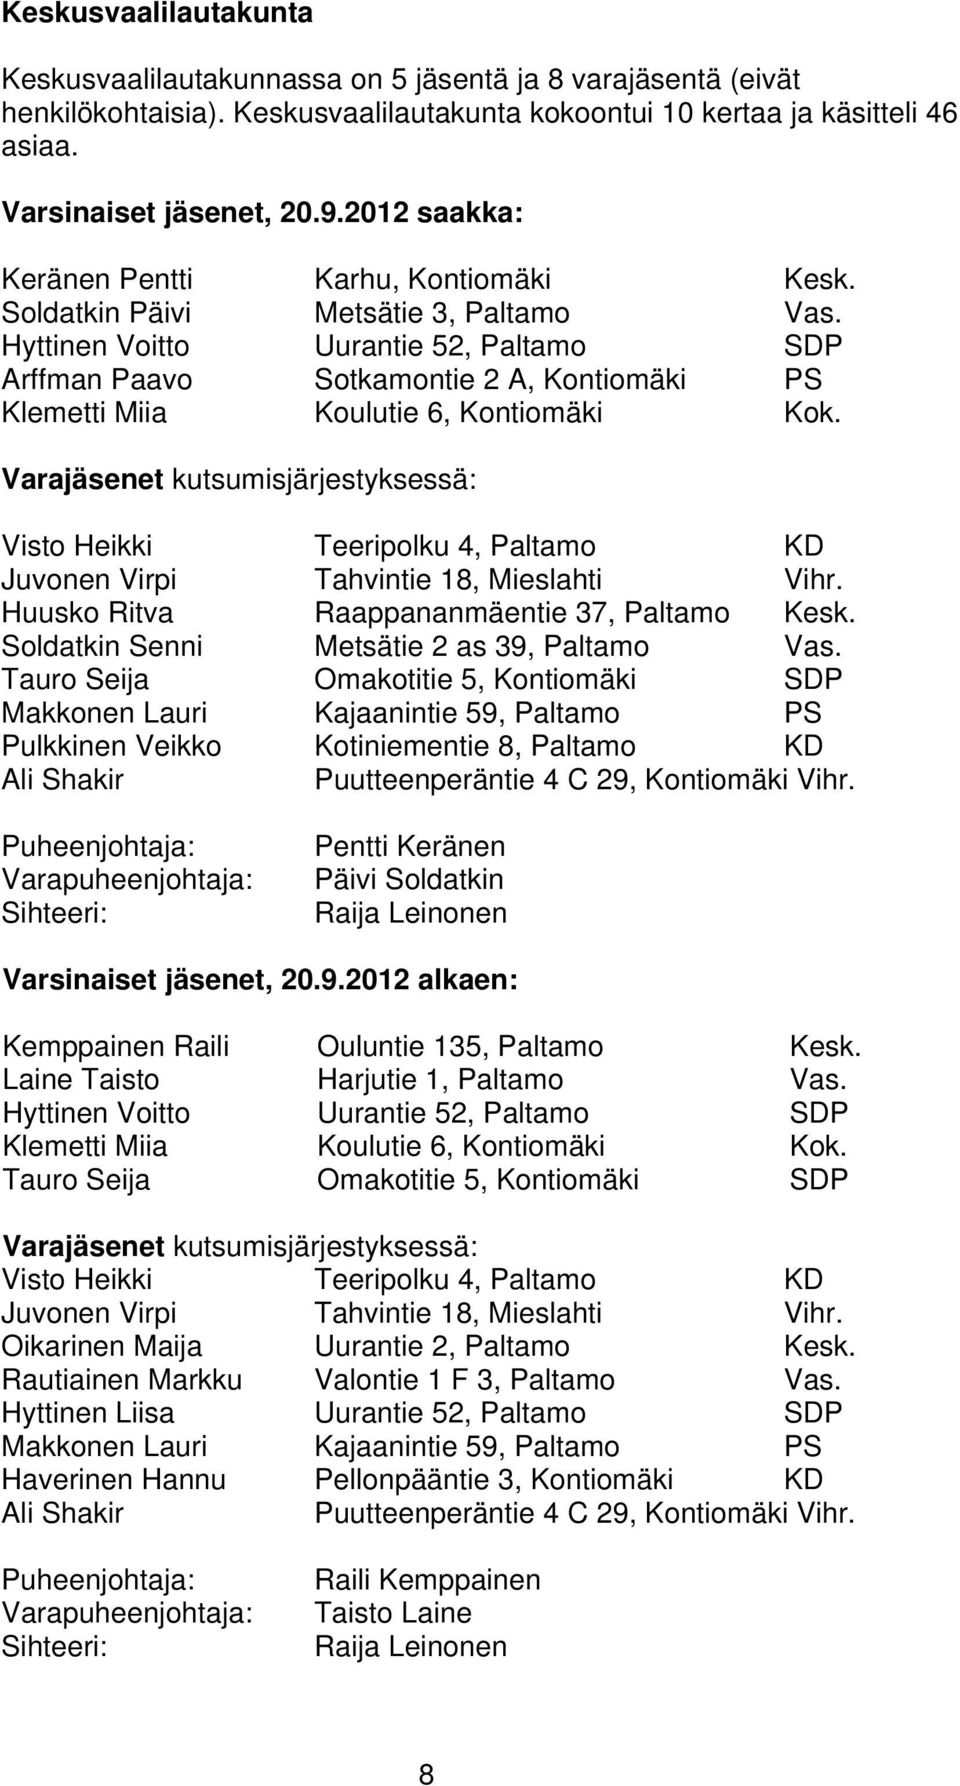 Hyttinen Voitto Uurantie 52, Paltamo SDP Arffman Paavo Sotkamontie 2 A, Kontiomäki PS Klemetti Miia Koulutie 6, Kontiomäki Kok.